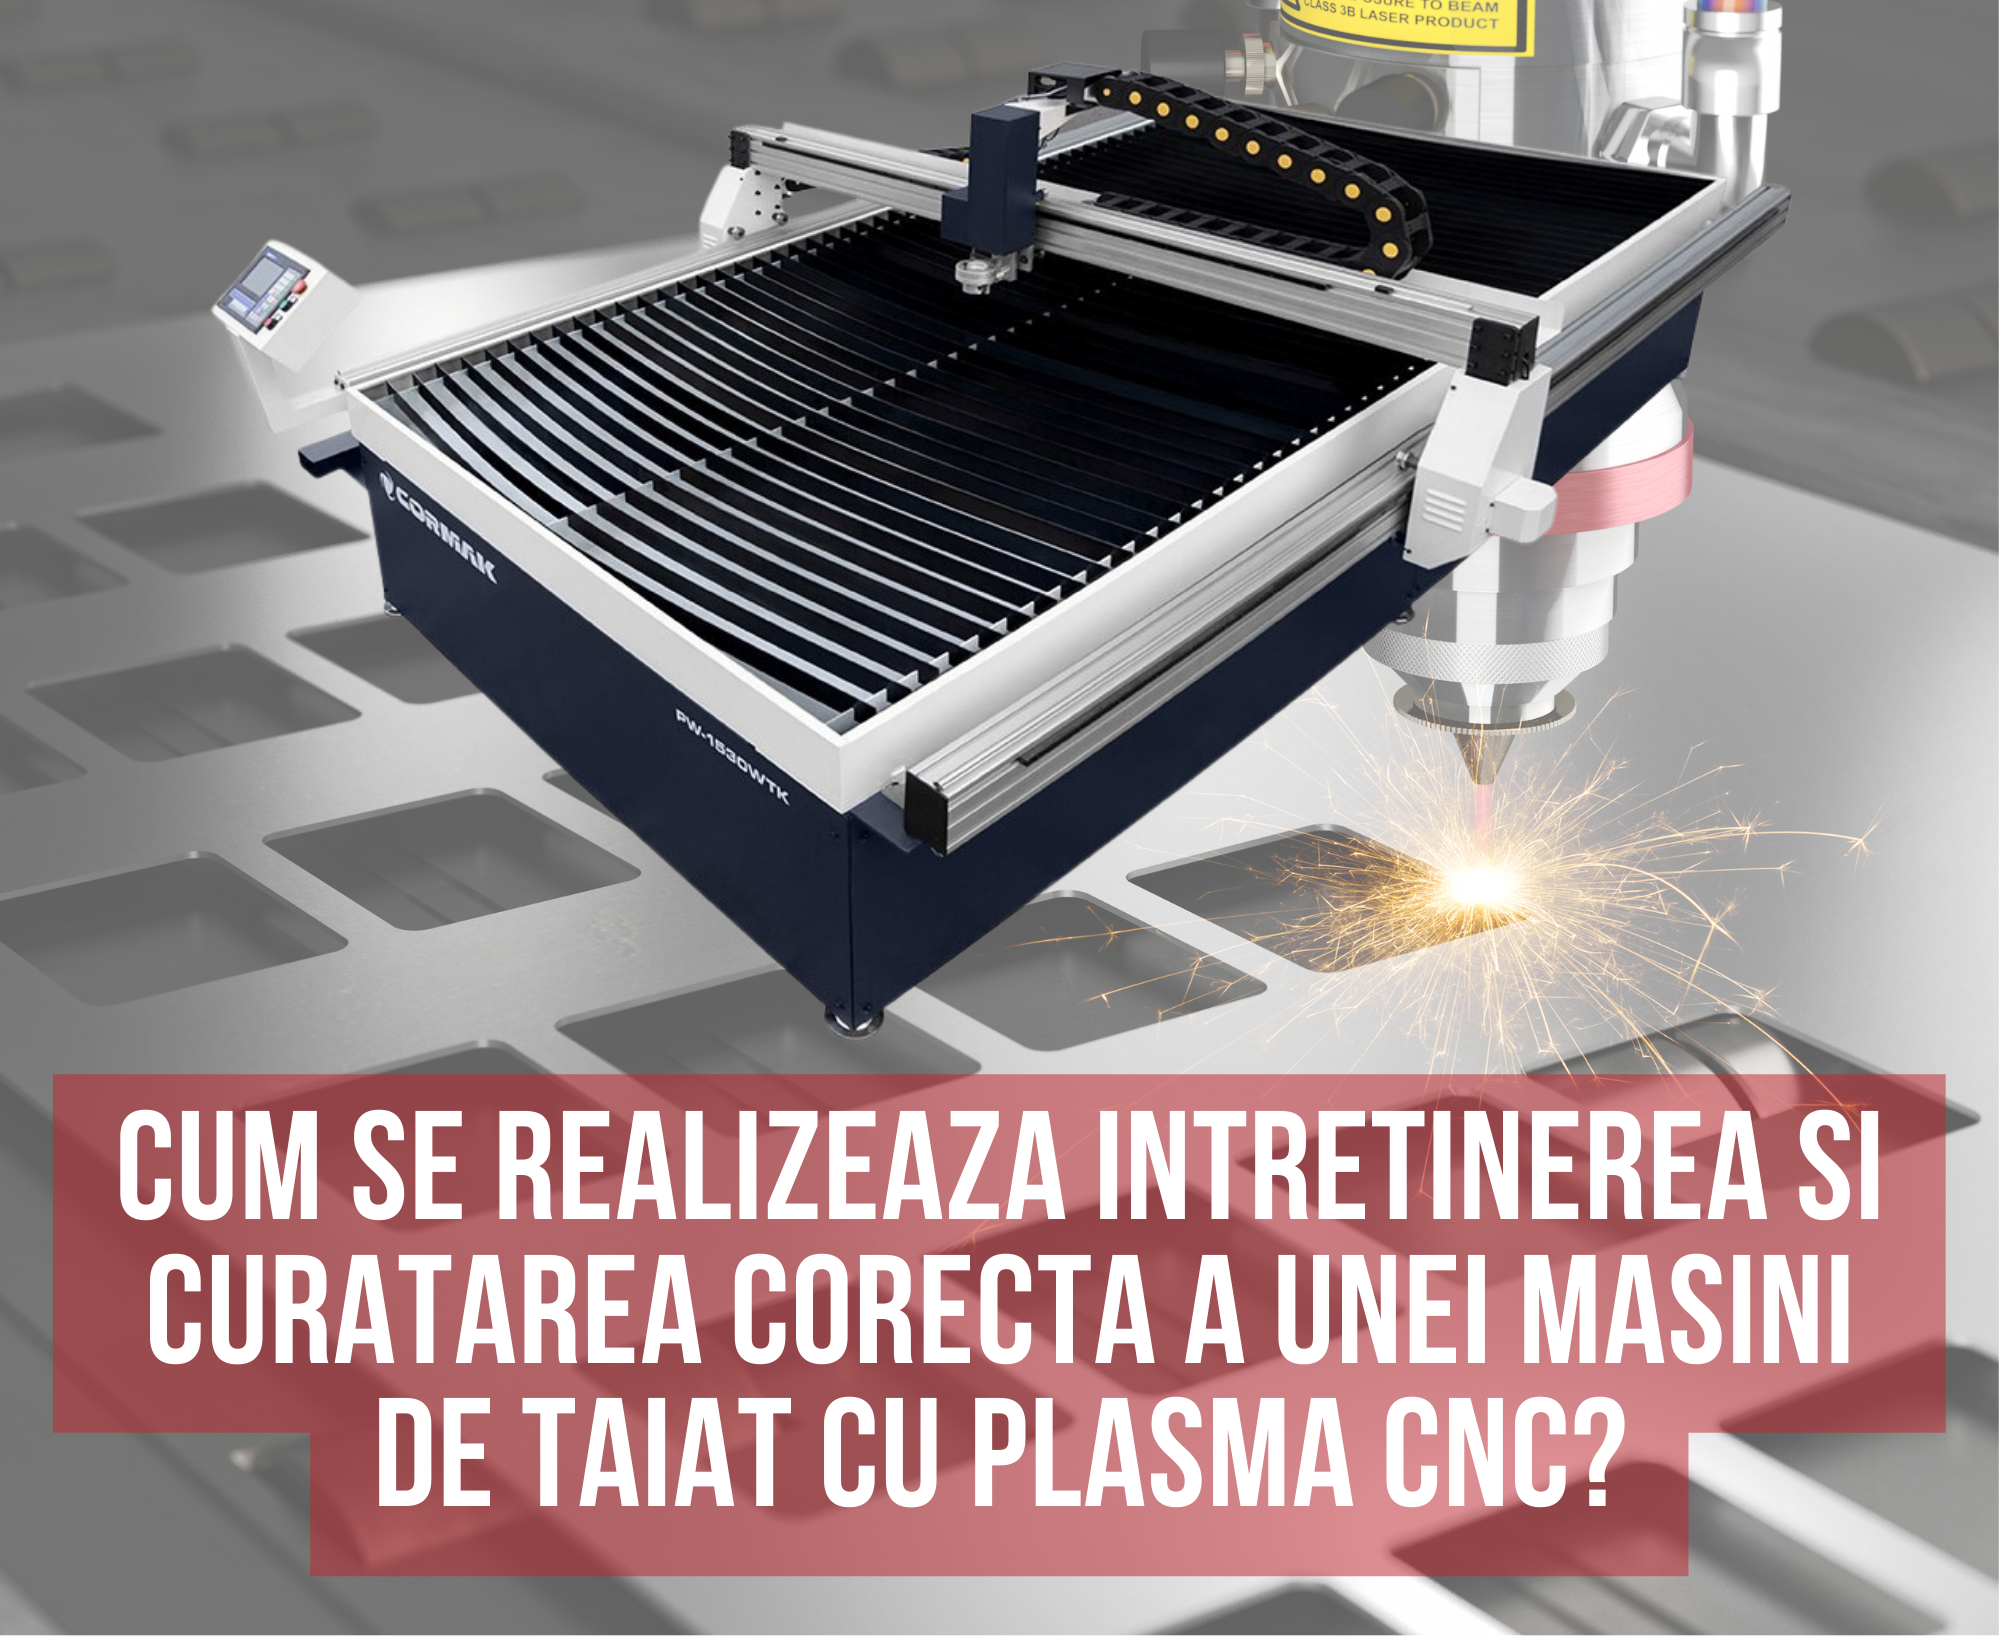 Cum se realizeaza intretinerea si curatarea corecta a unei masini de taiat cu plasma CNC?